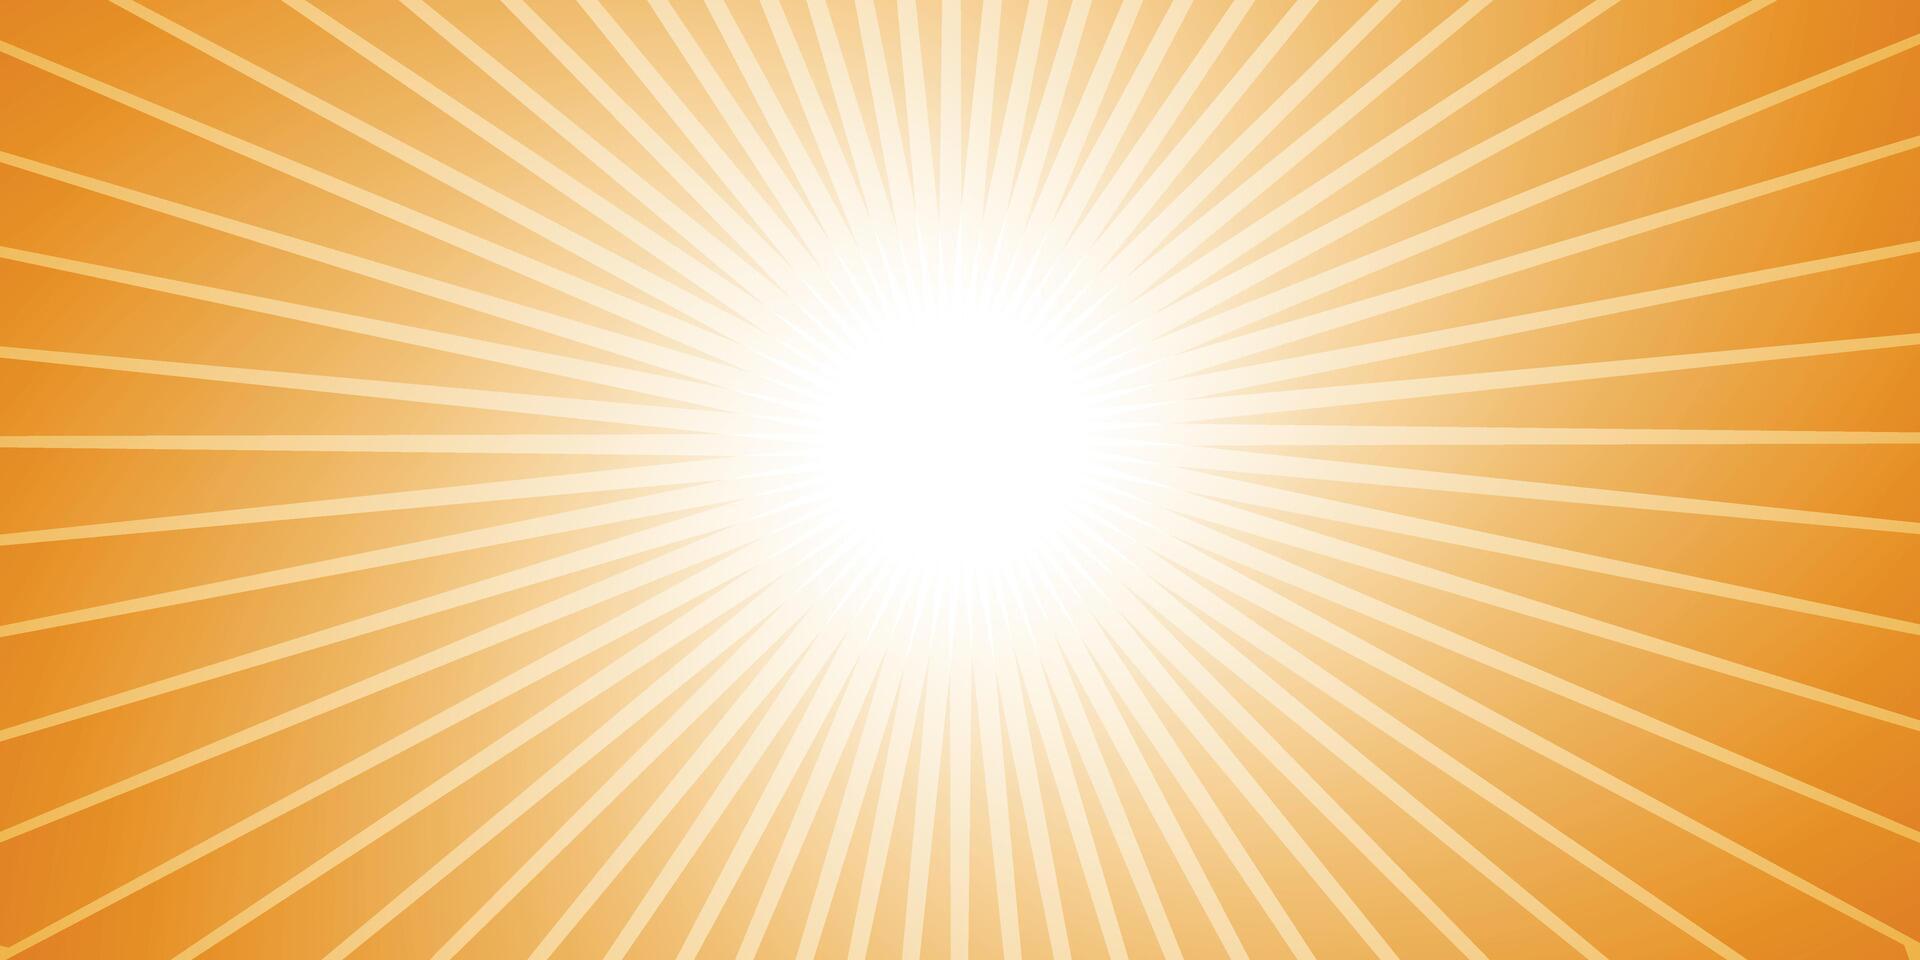 sun-burst vector illustration for background design.